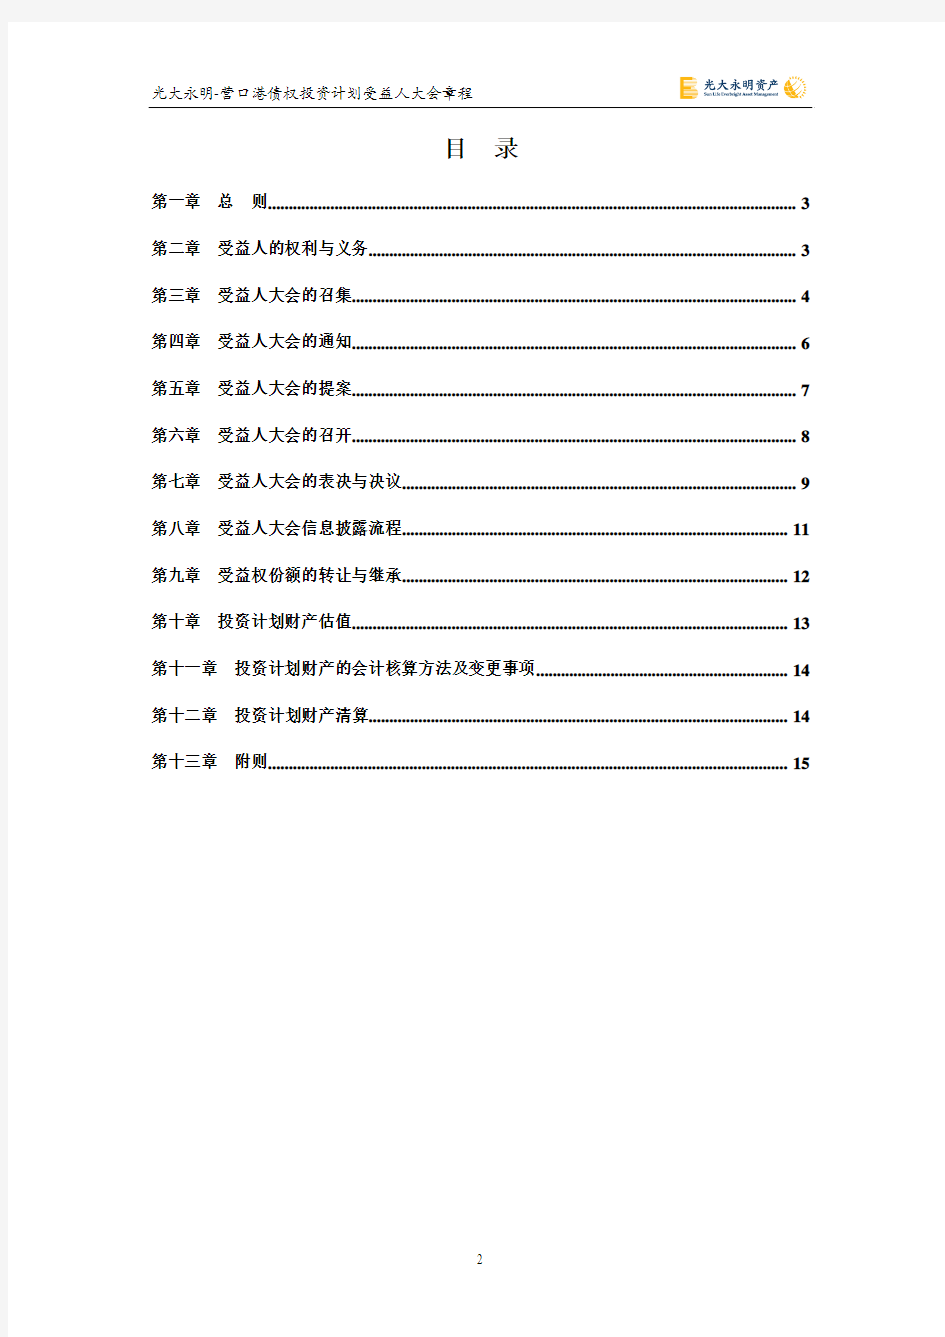 3.2.9  光大永明-营口港债权投资计划受益人大会章程(草案)